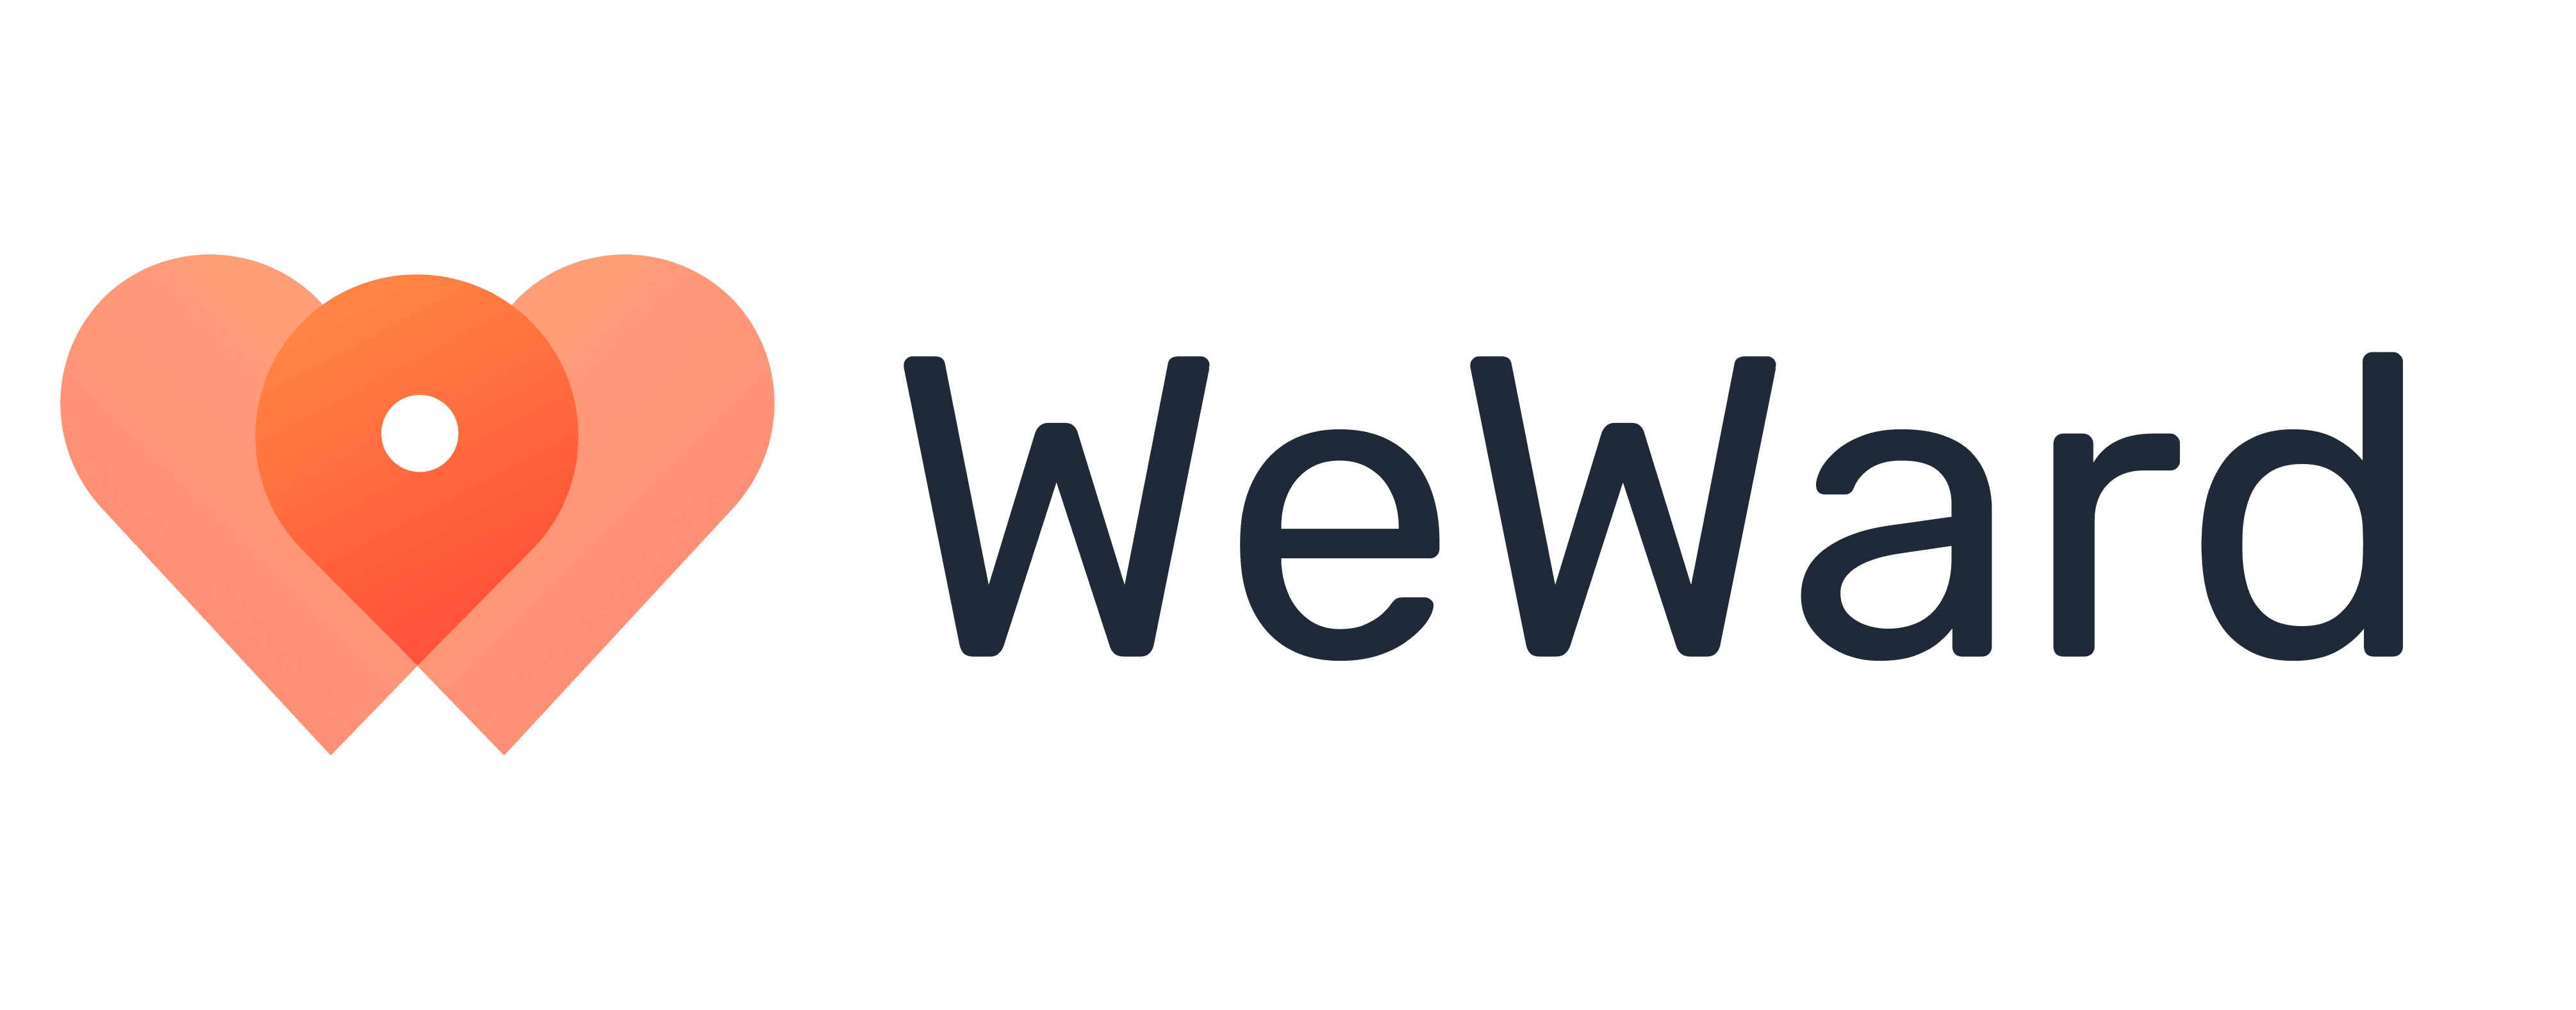 logo weward